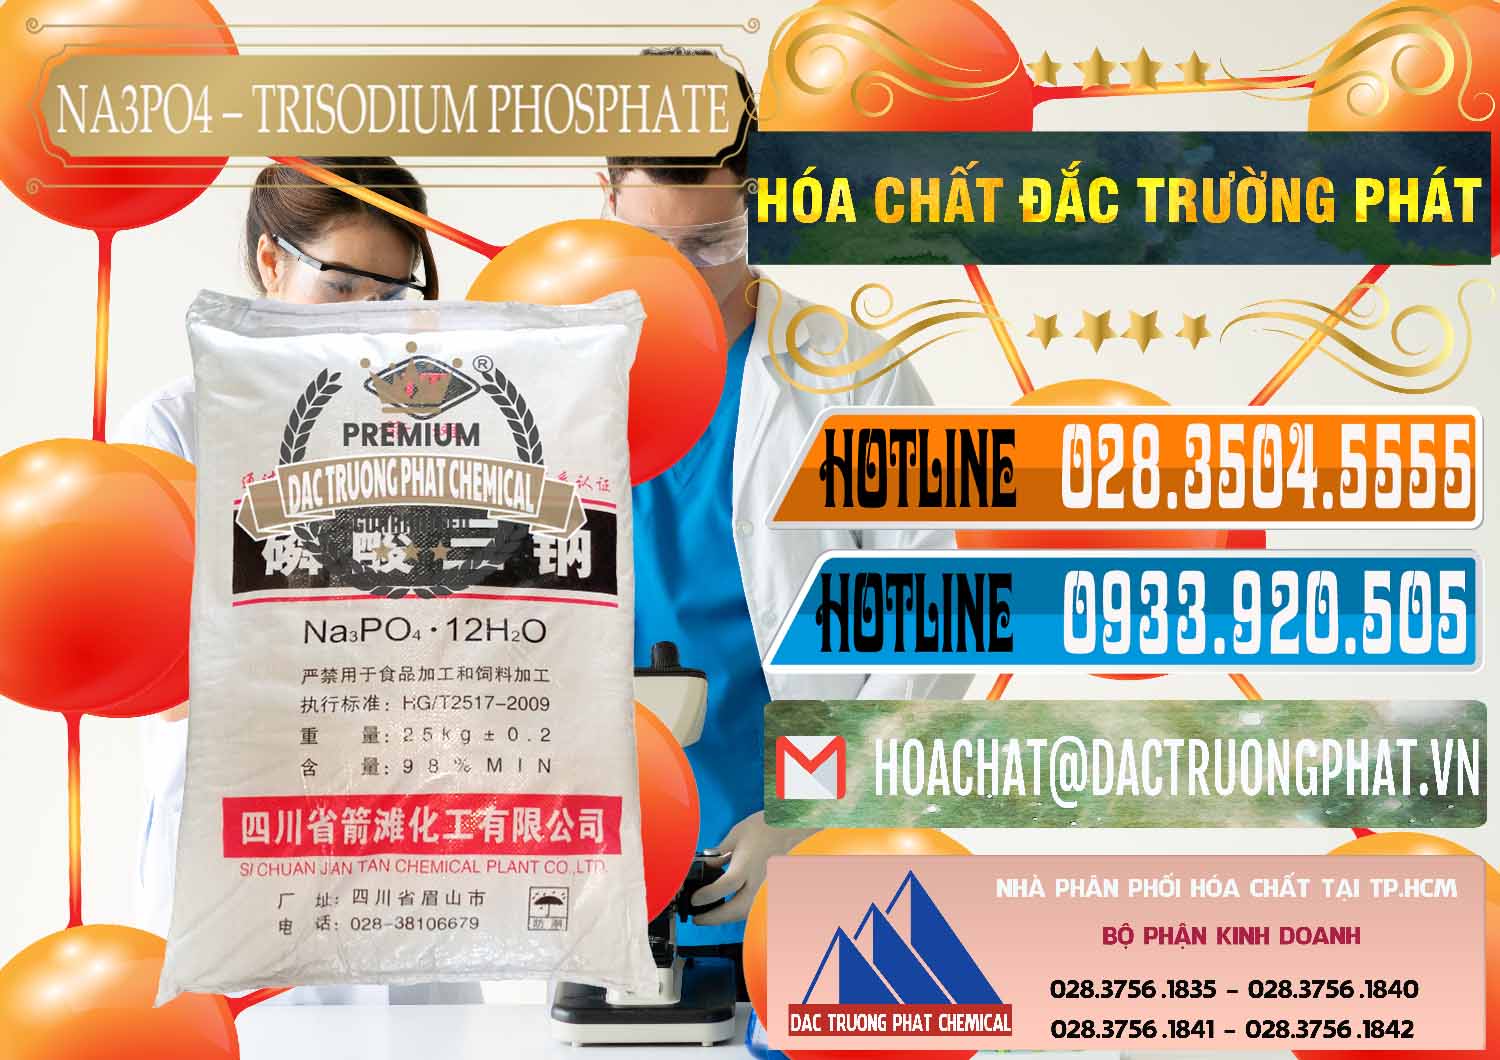 Cty chuyên cung cấp ( bán ) Na3PO4 – Trisodium Phosphate Trung Quốc China JT - 0102 - Bán & cung cấp hóa chất tại TP.HCM - stmp.net